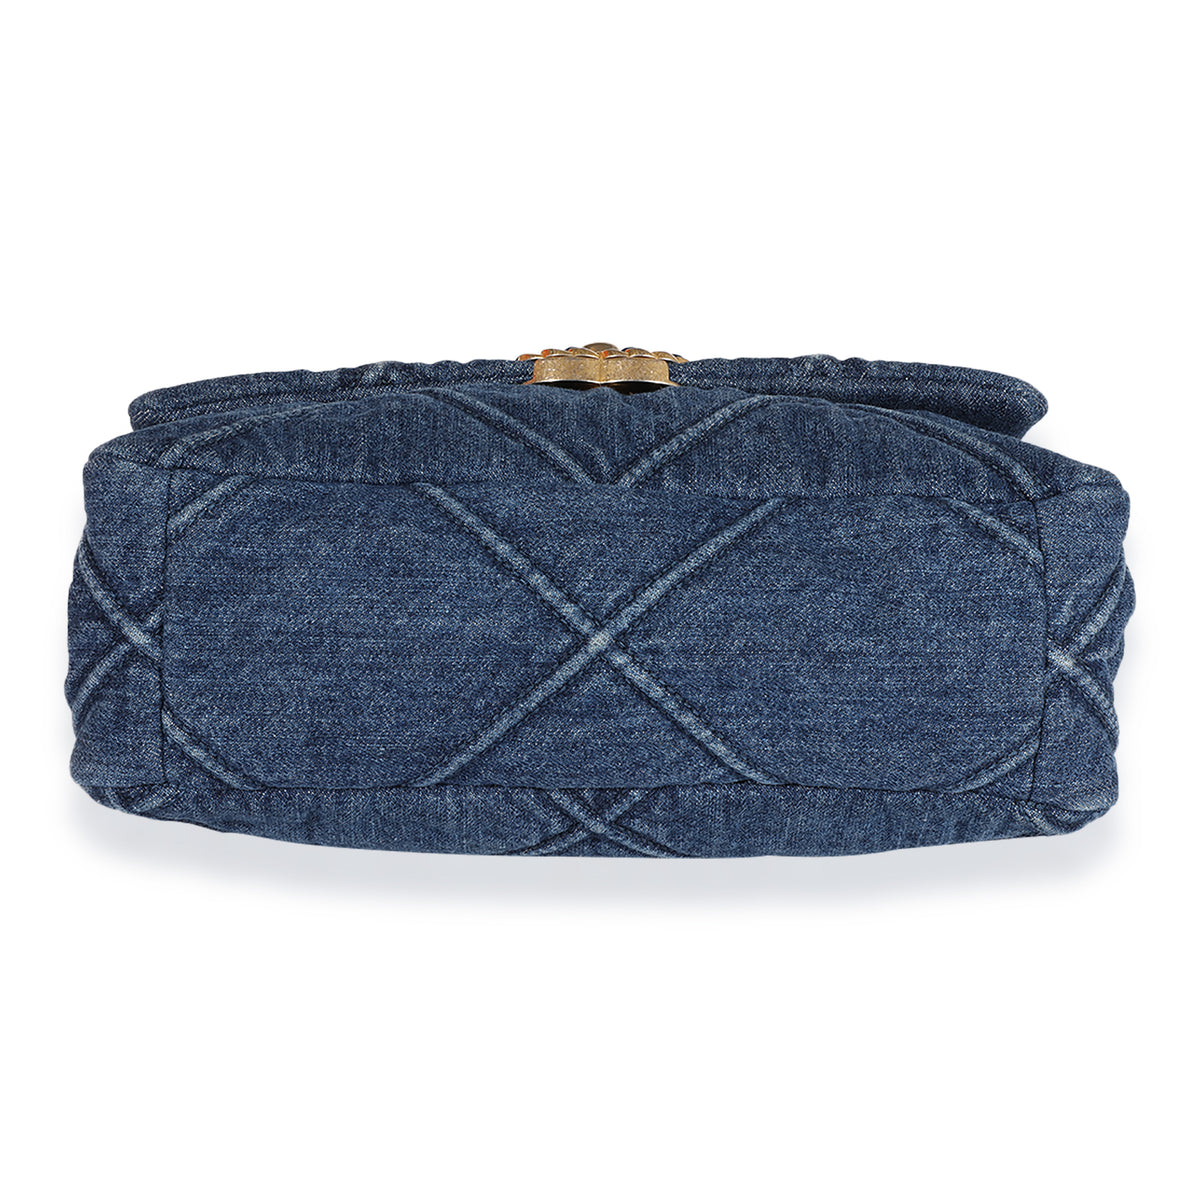 Chanel Blue Denim Quilted Medium Chanel 19 Bag, myGemma